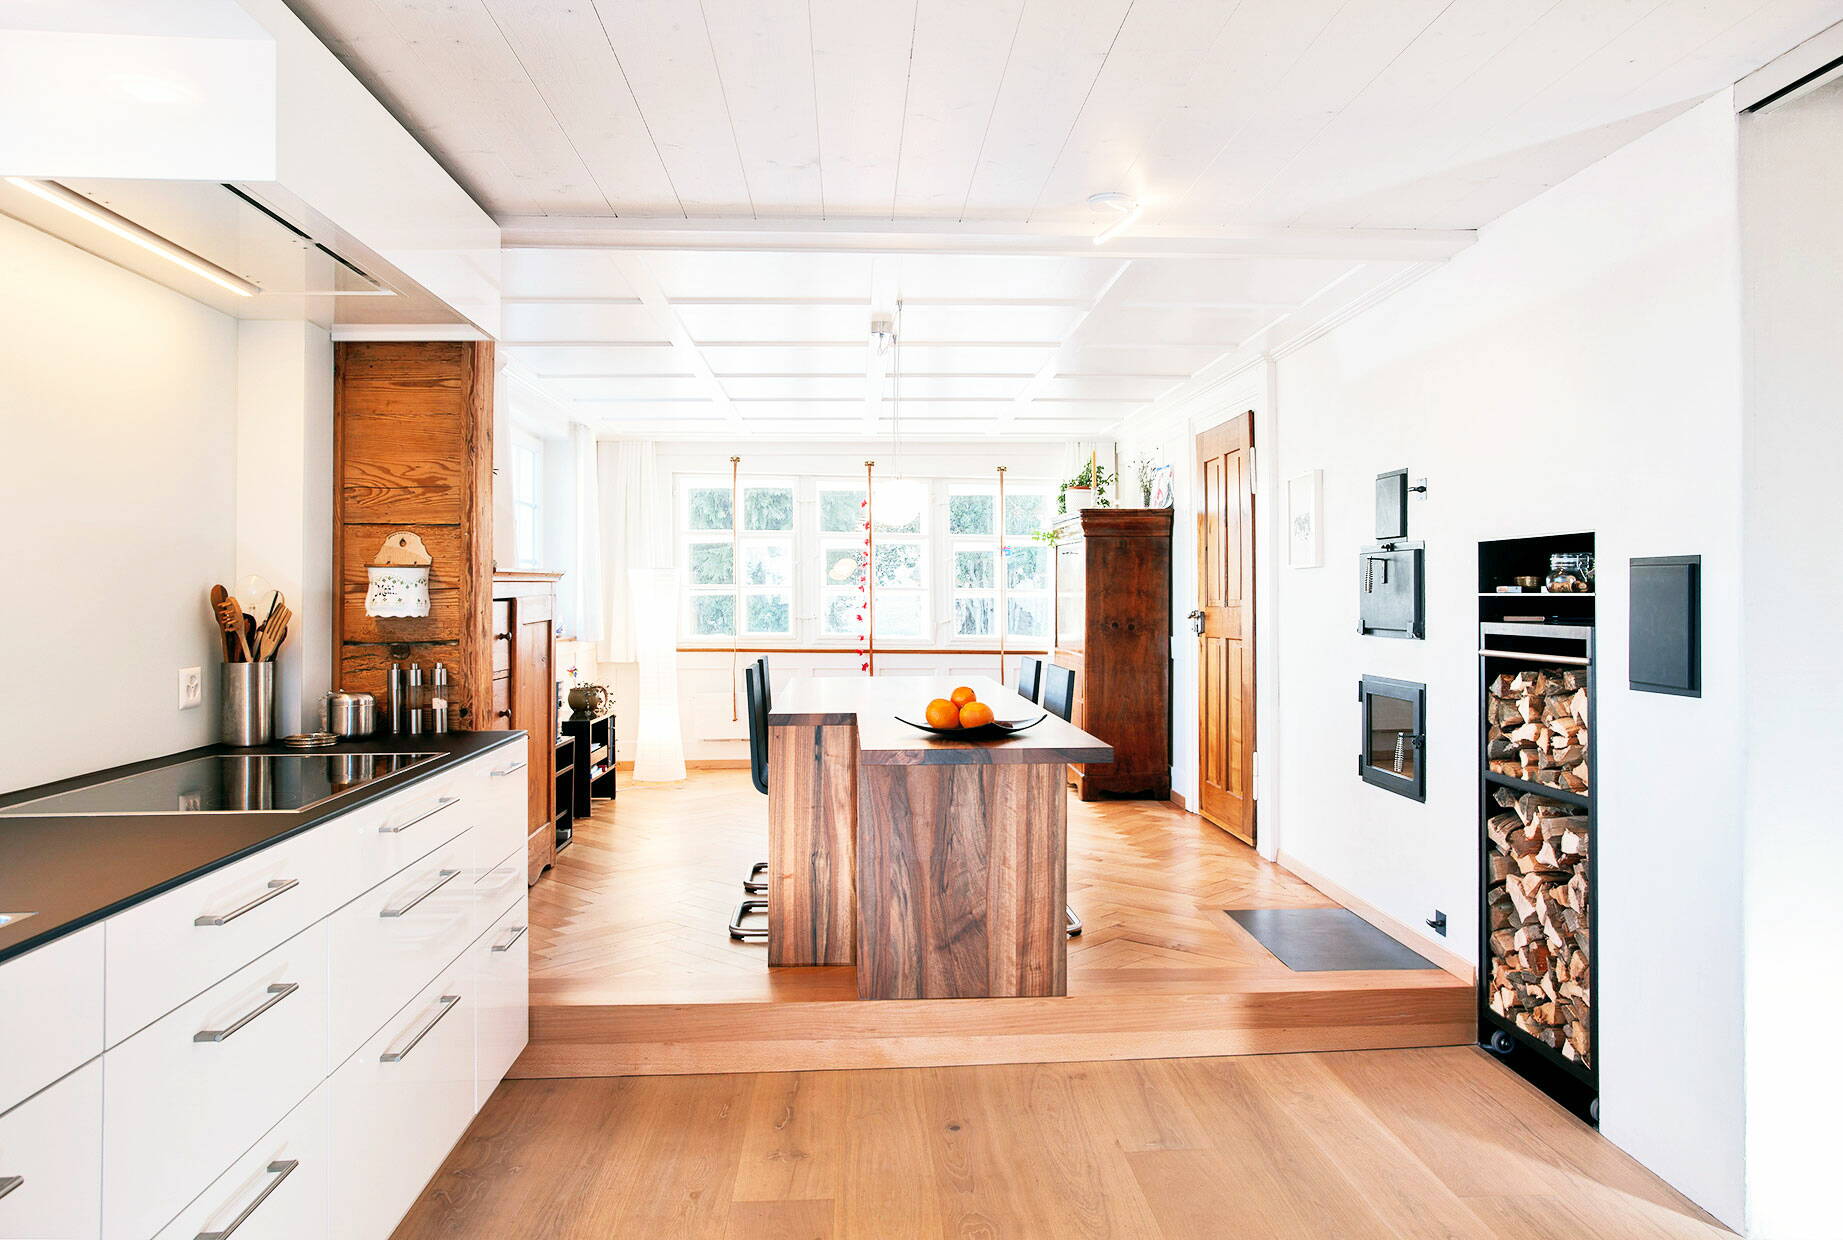 Schlichte, moderne Küche in Holz gearbeitet im Dachstock eines Altbaus mit grosszügigem Fenster.